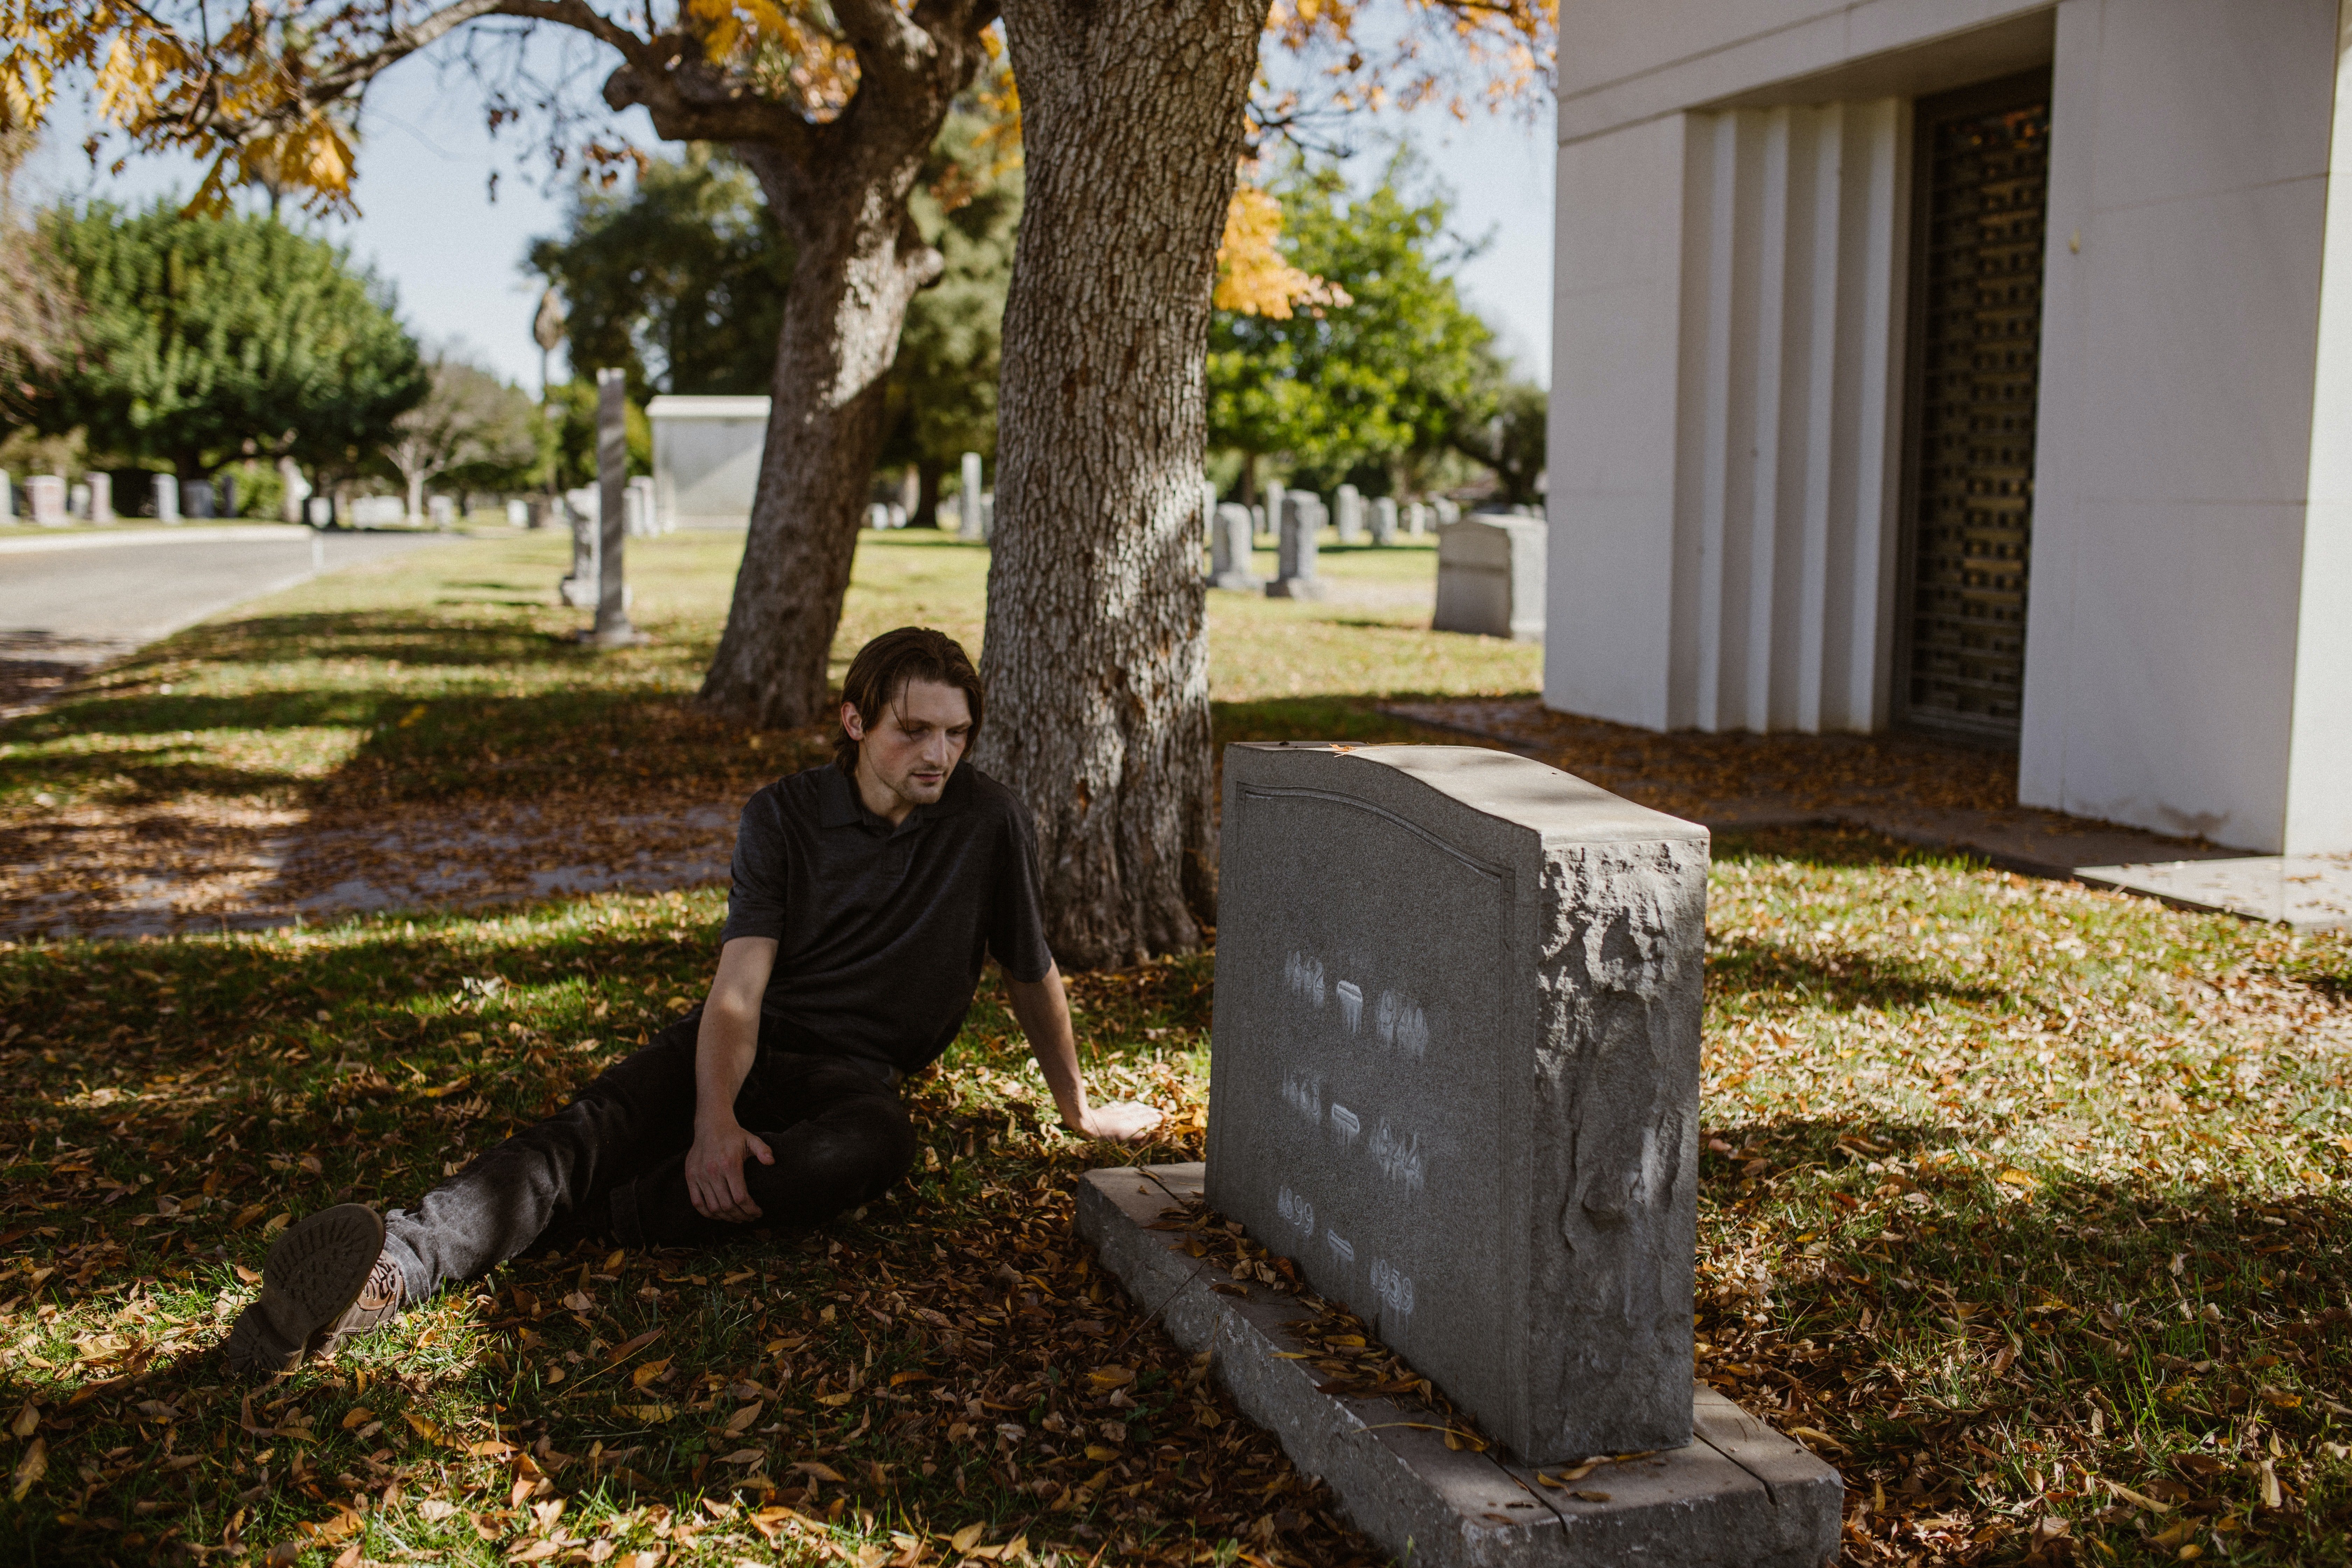 Mark war schockiert, als er sah, dass die Jungen auf dem Friedhof einen Mann trafen. | Quelle: Pexels